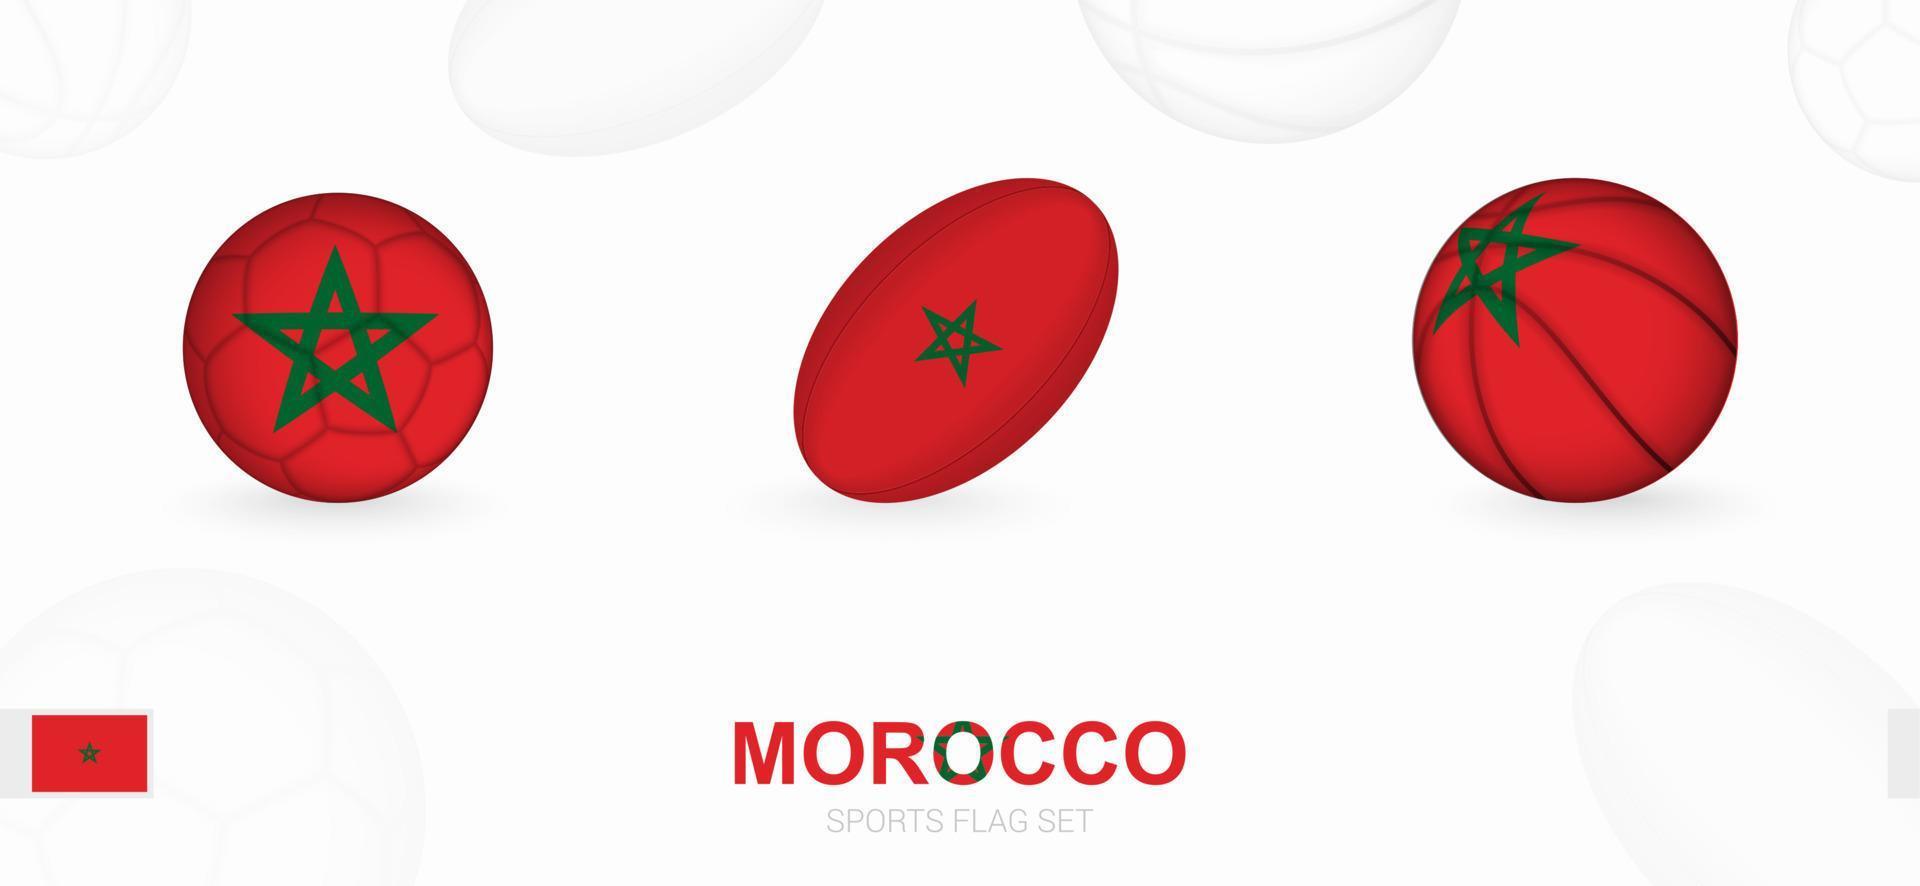 Esportes ícones para futebol, rúgbi e basquetebol com a bandeira do Marrocos. vetor